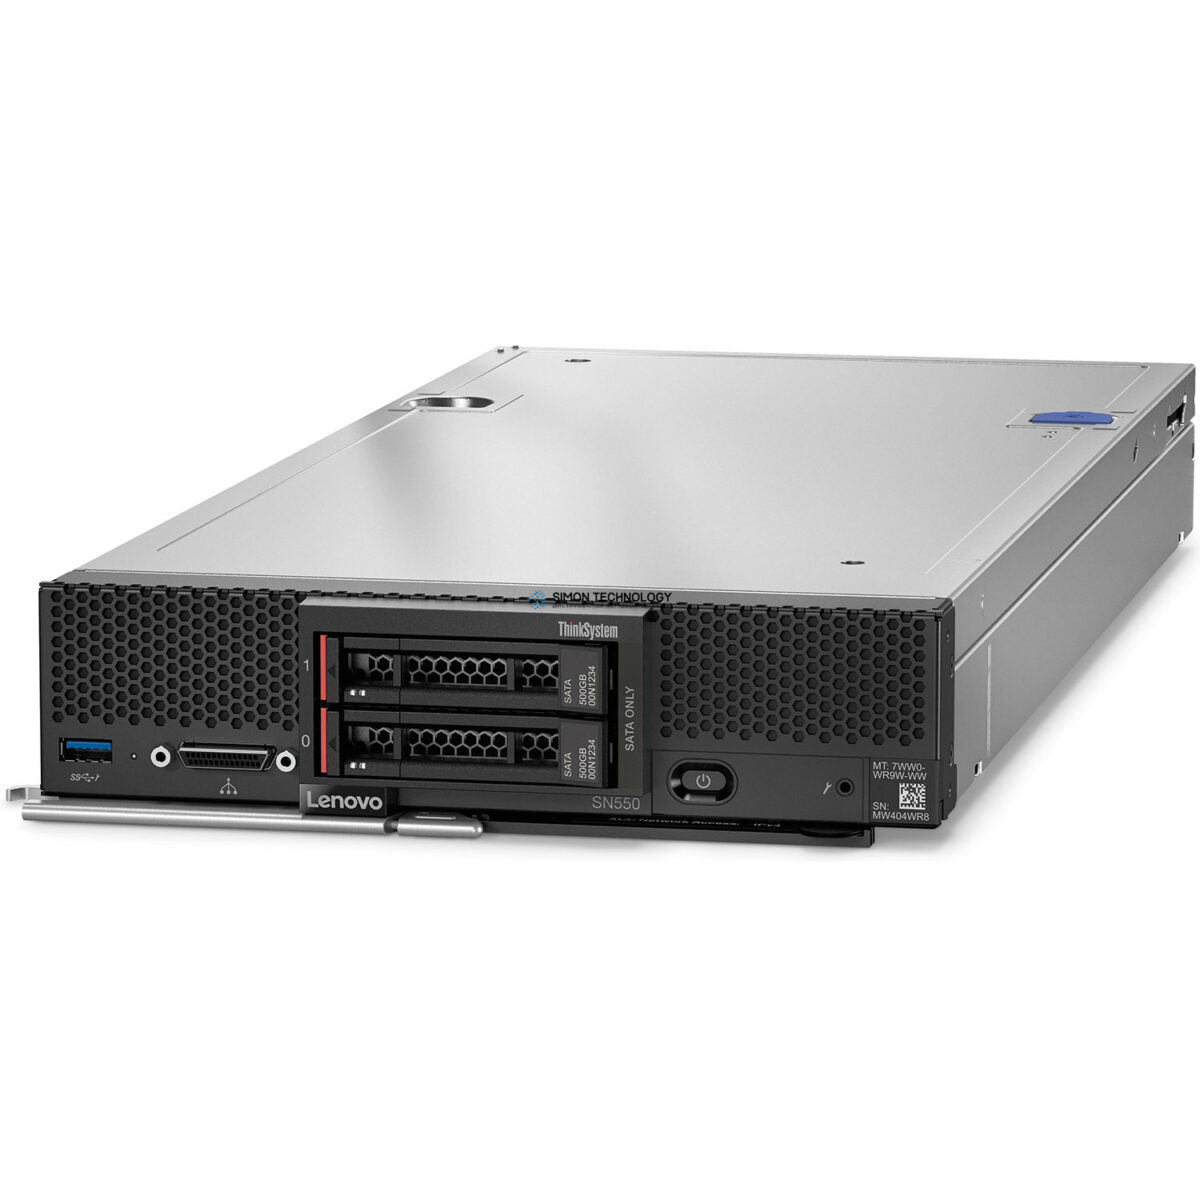 Сервер Lenovo SN550 Blade Server Configure To Order (SN550-CTO)